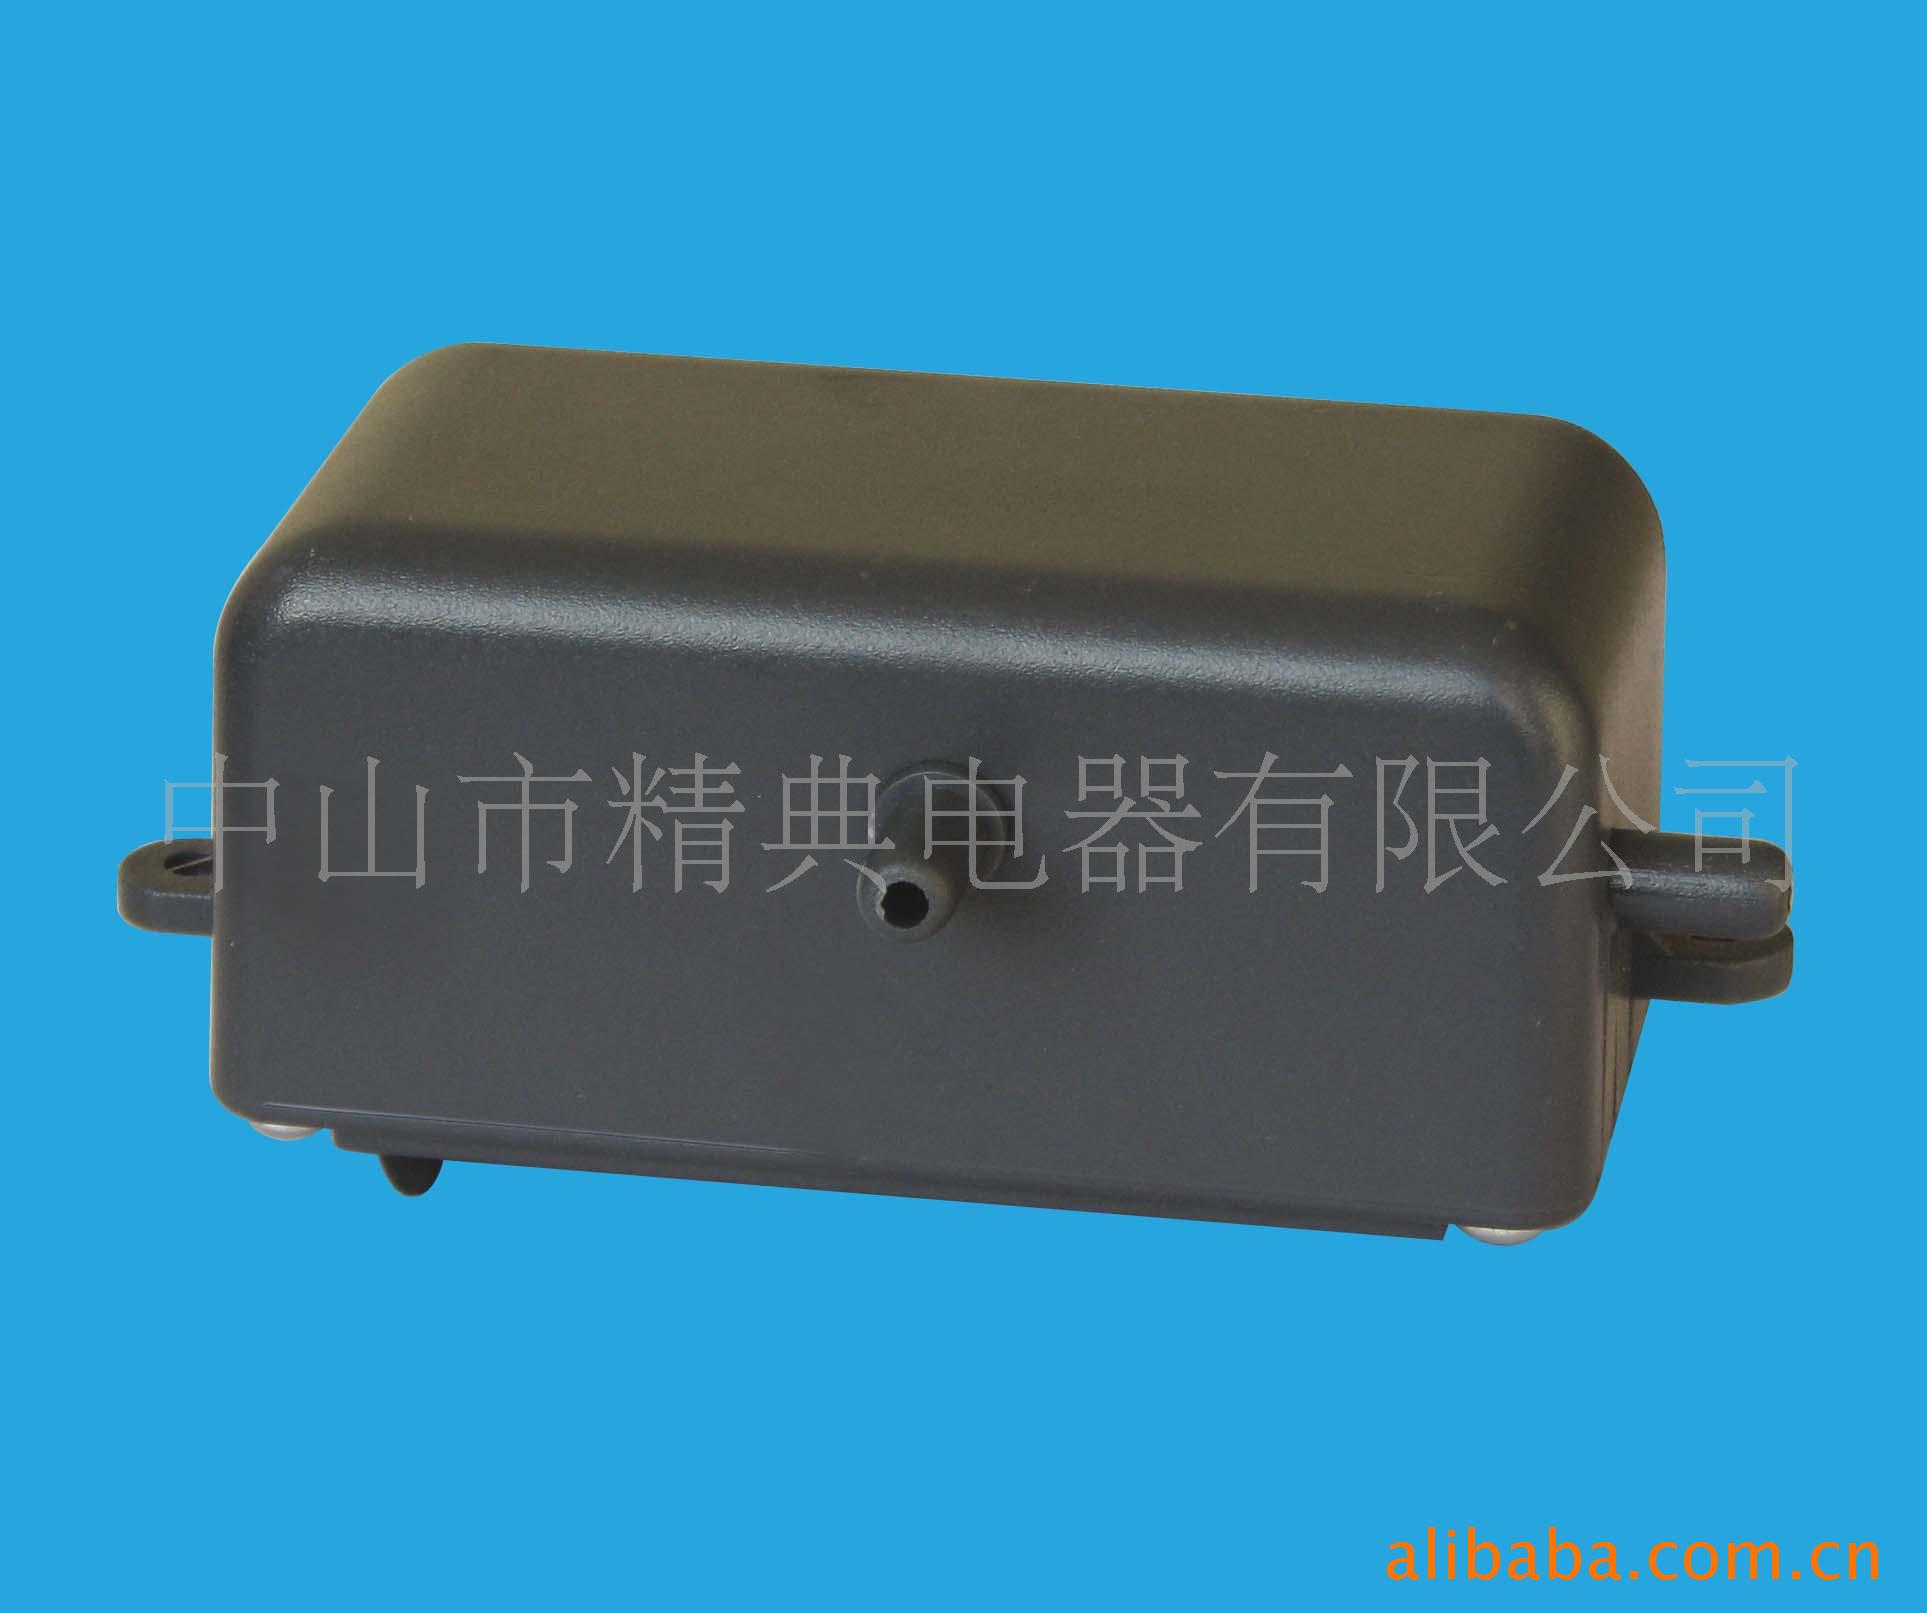 supply Mute atmosphere Disinfection machine Oxygen Machine Air pump  JD-M300 )Side intake